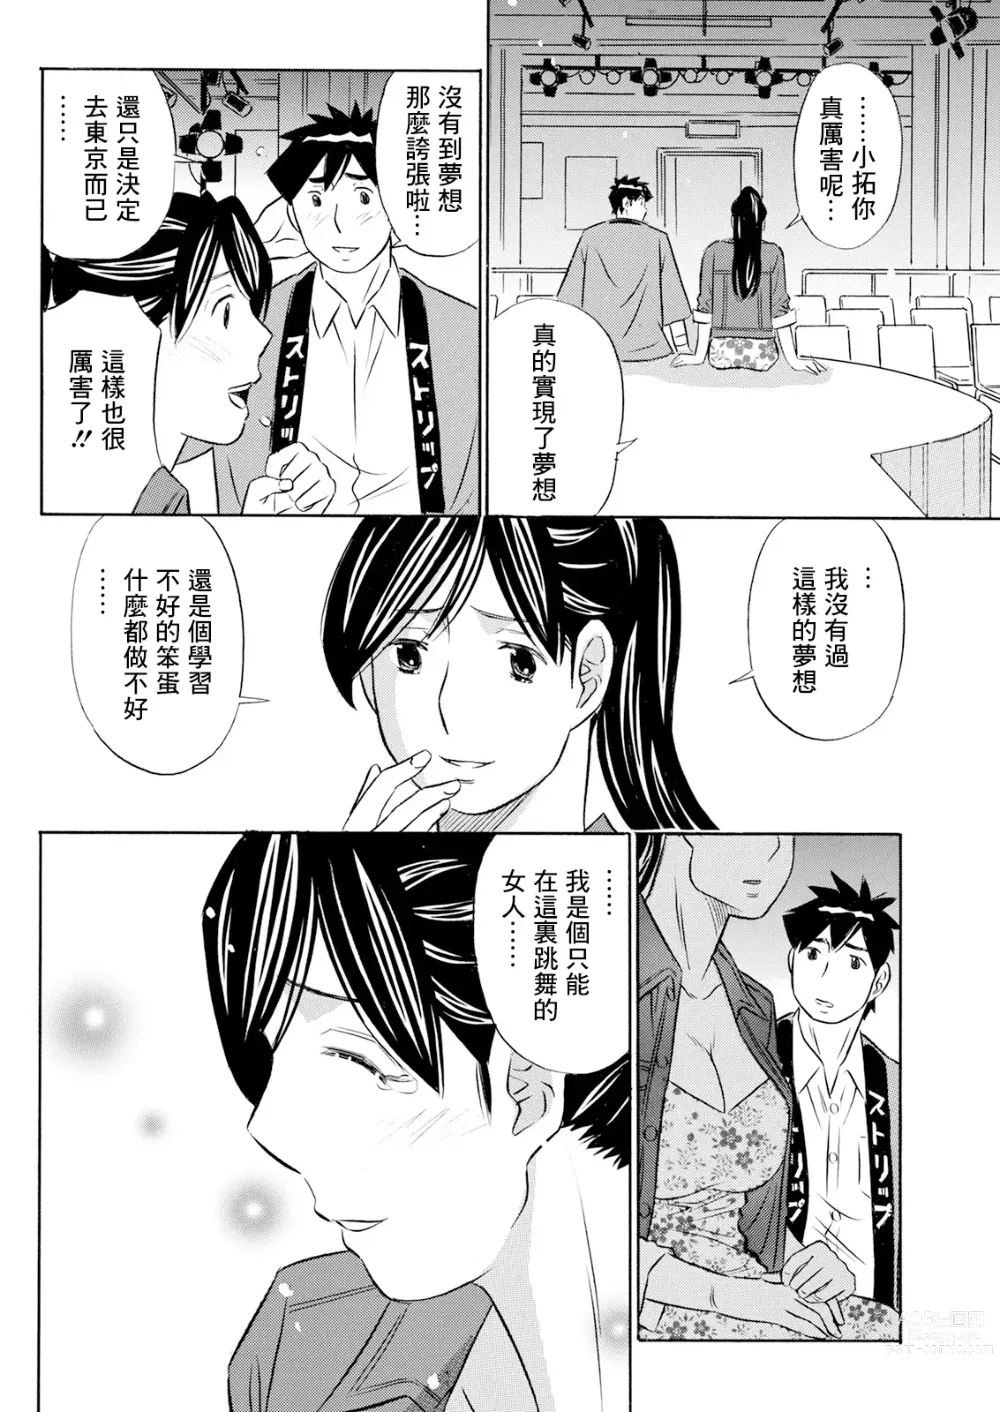 Page 8 of manga Junjou Strip